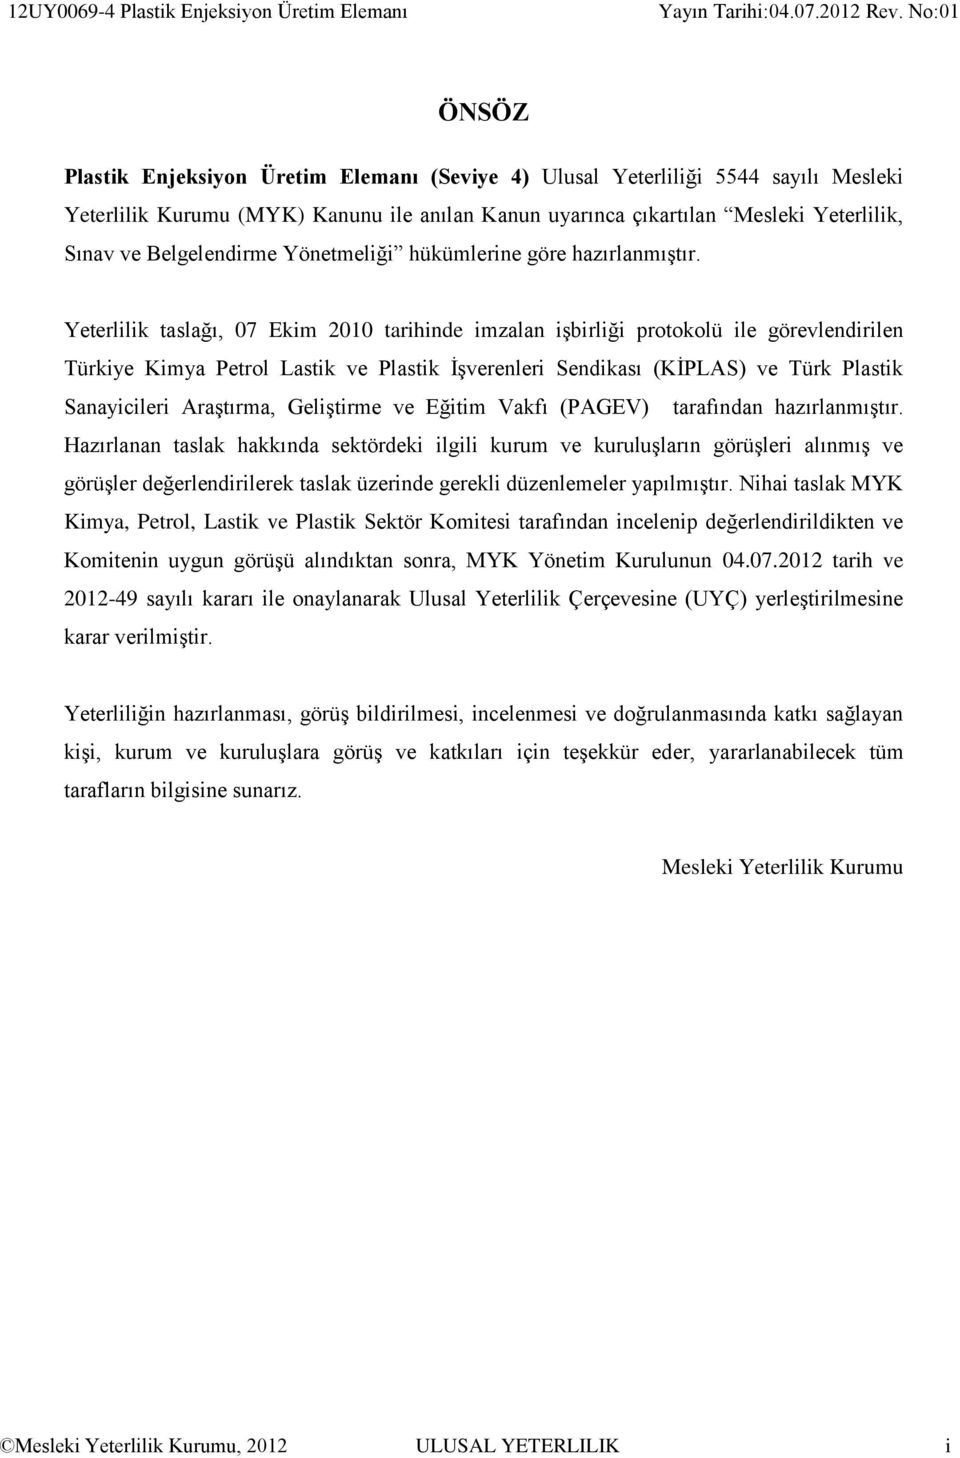 Yeterlilik taslağı, 07 Ekim 2010 tarihinde imzalan işbirliği protokolü ile görevlendirilen Türkiye Kimya Petrol Lastik ve Plastik İşverenleri Sendikası (KİPLAS) ve Türk Plastik Sanayicileri